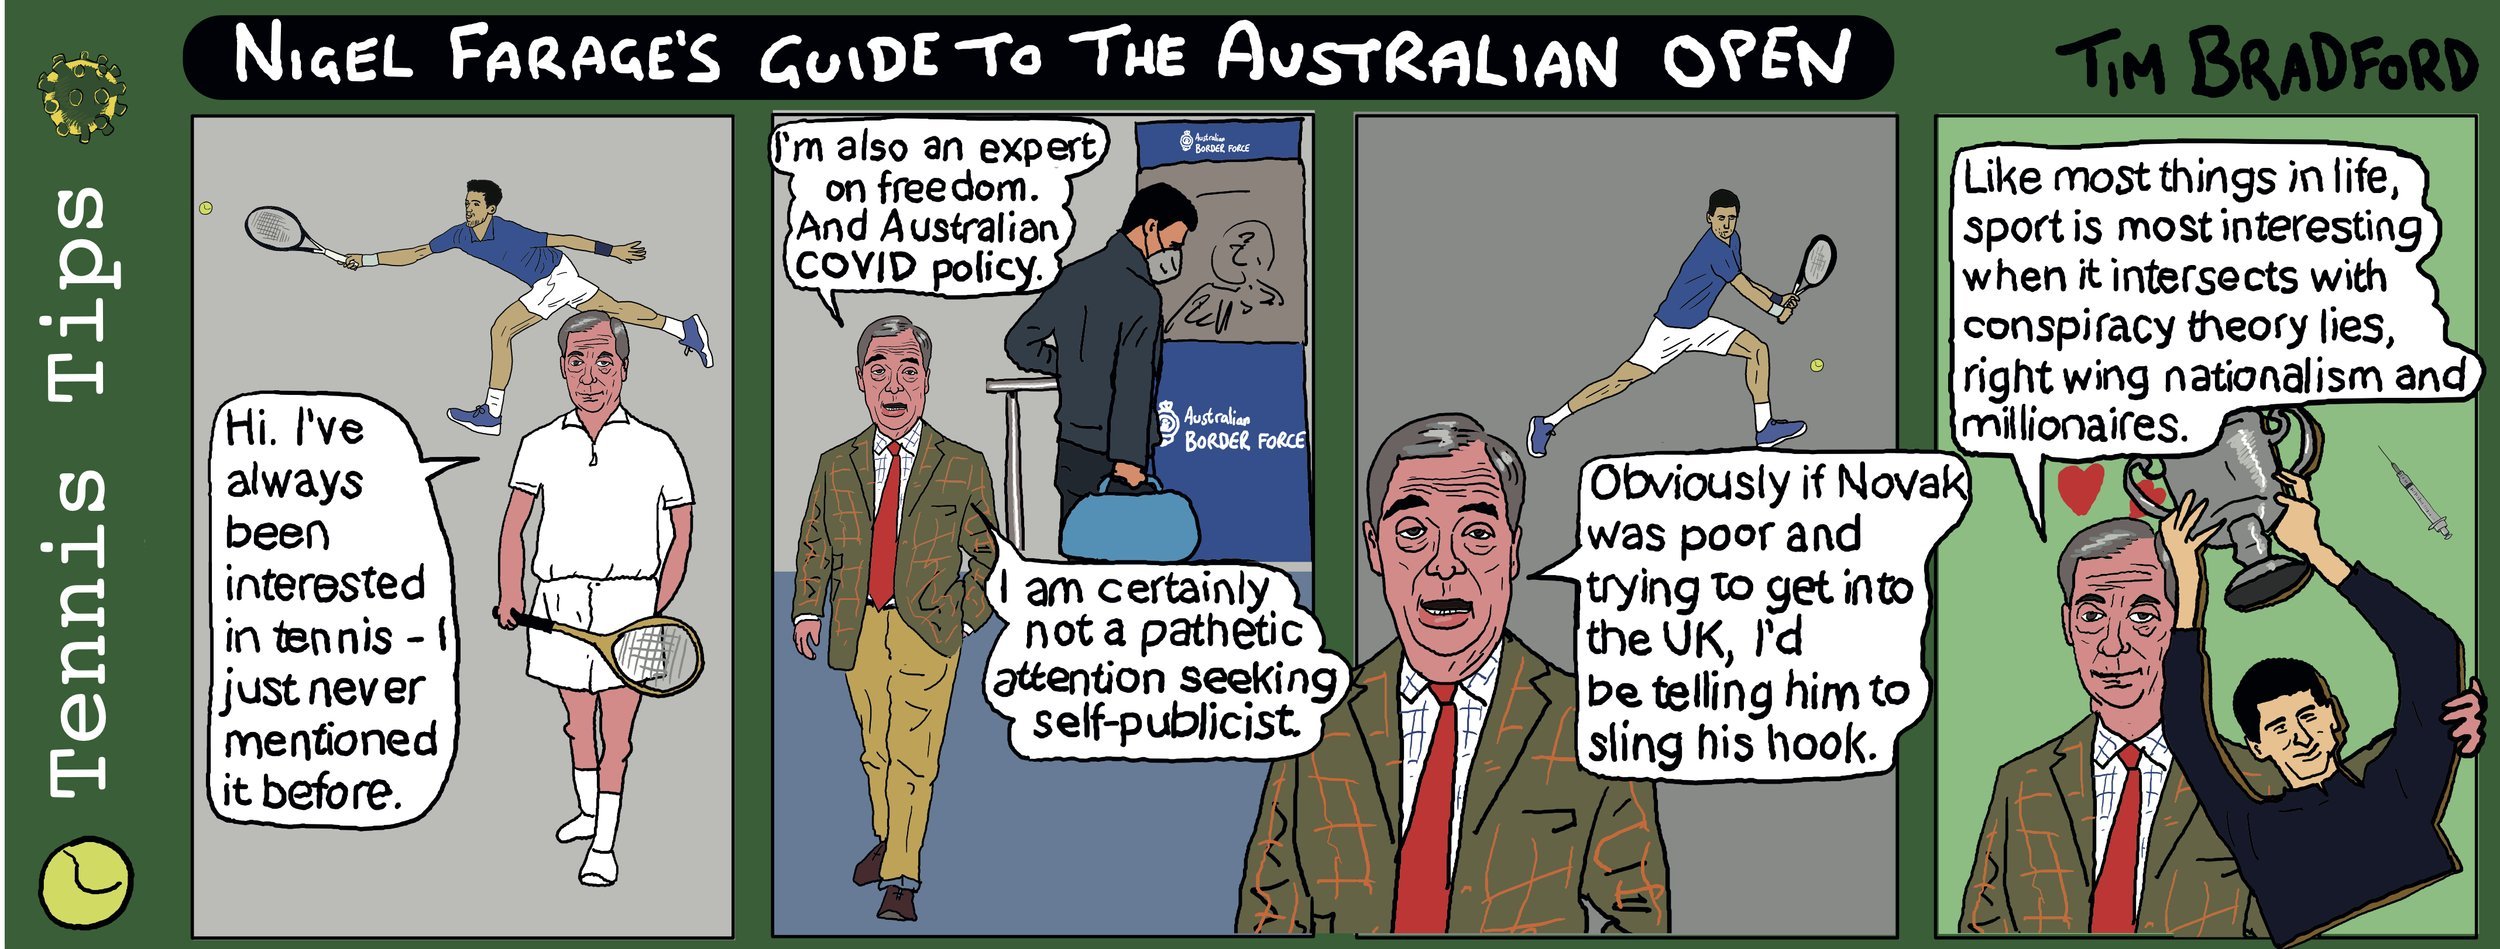 Nigel Farage's Guide to the Australian Open - 10/01/2022